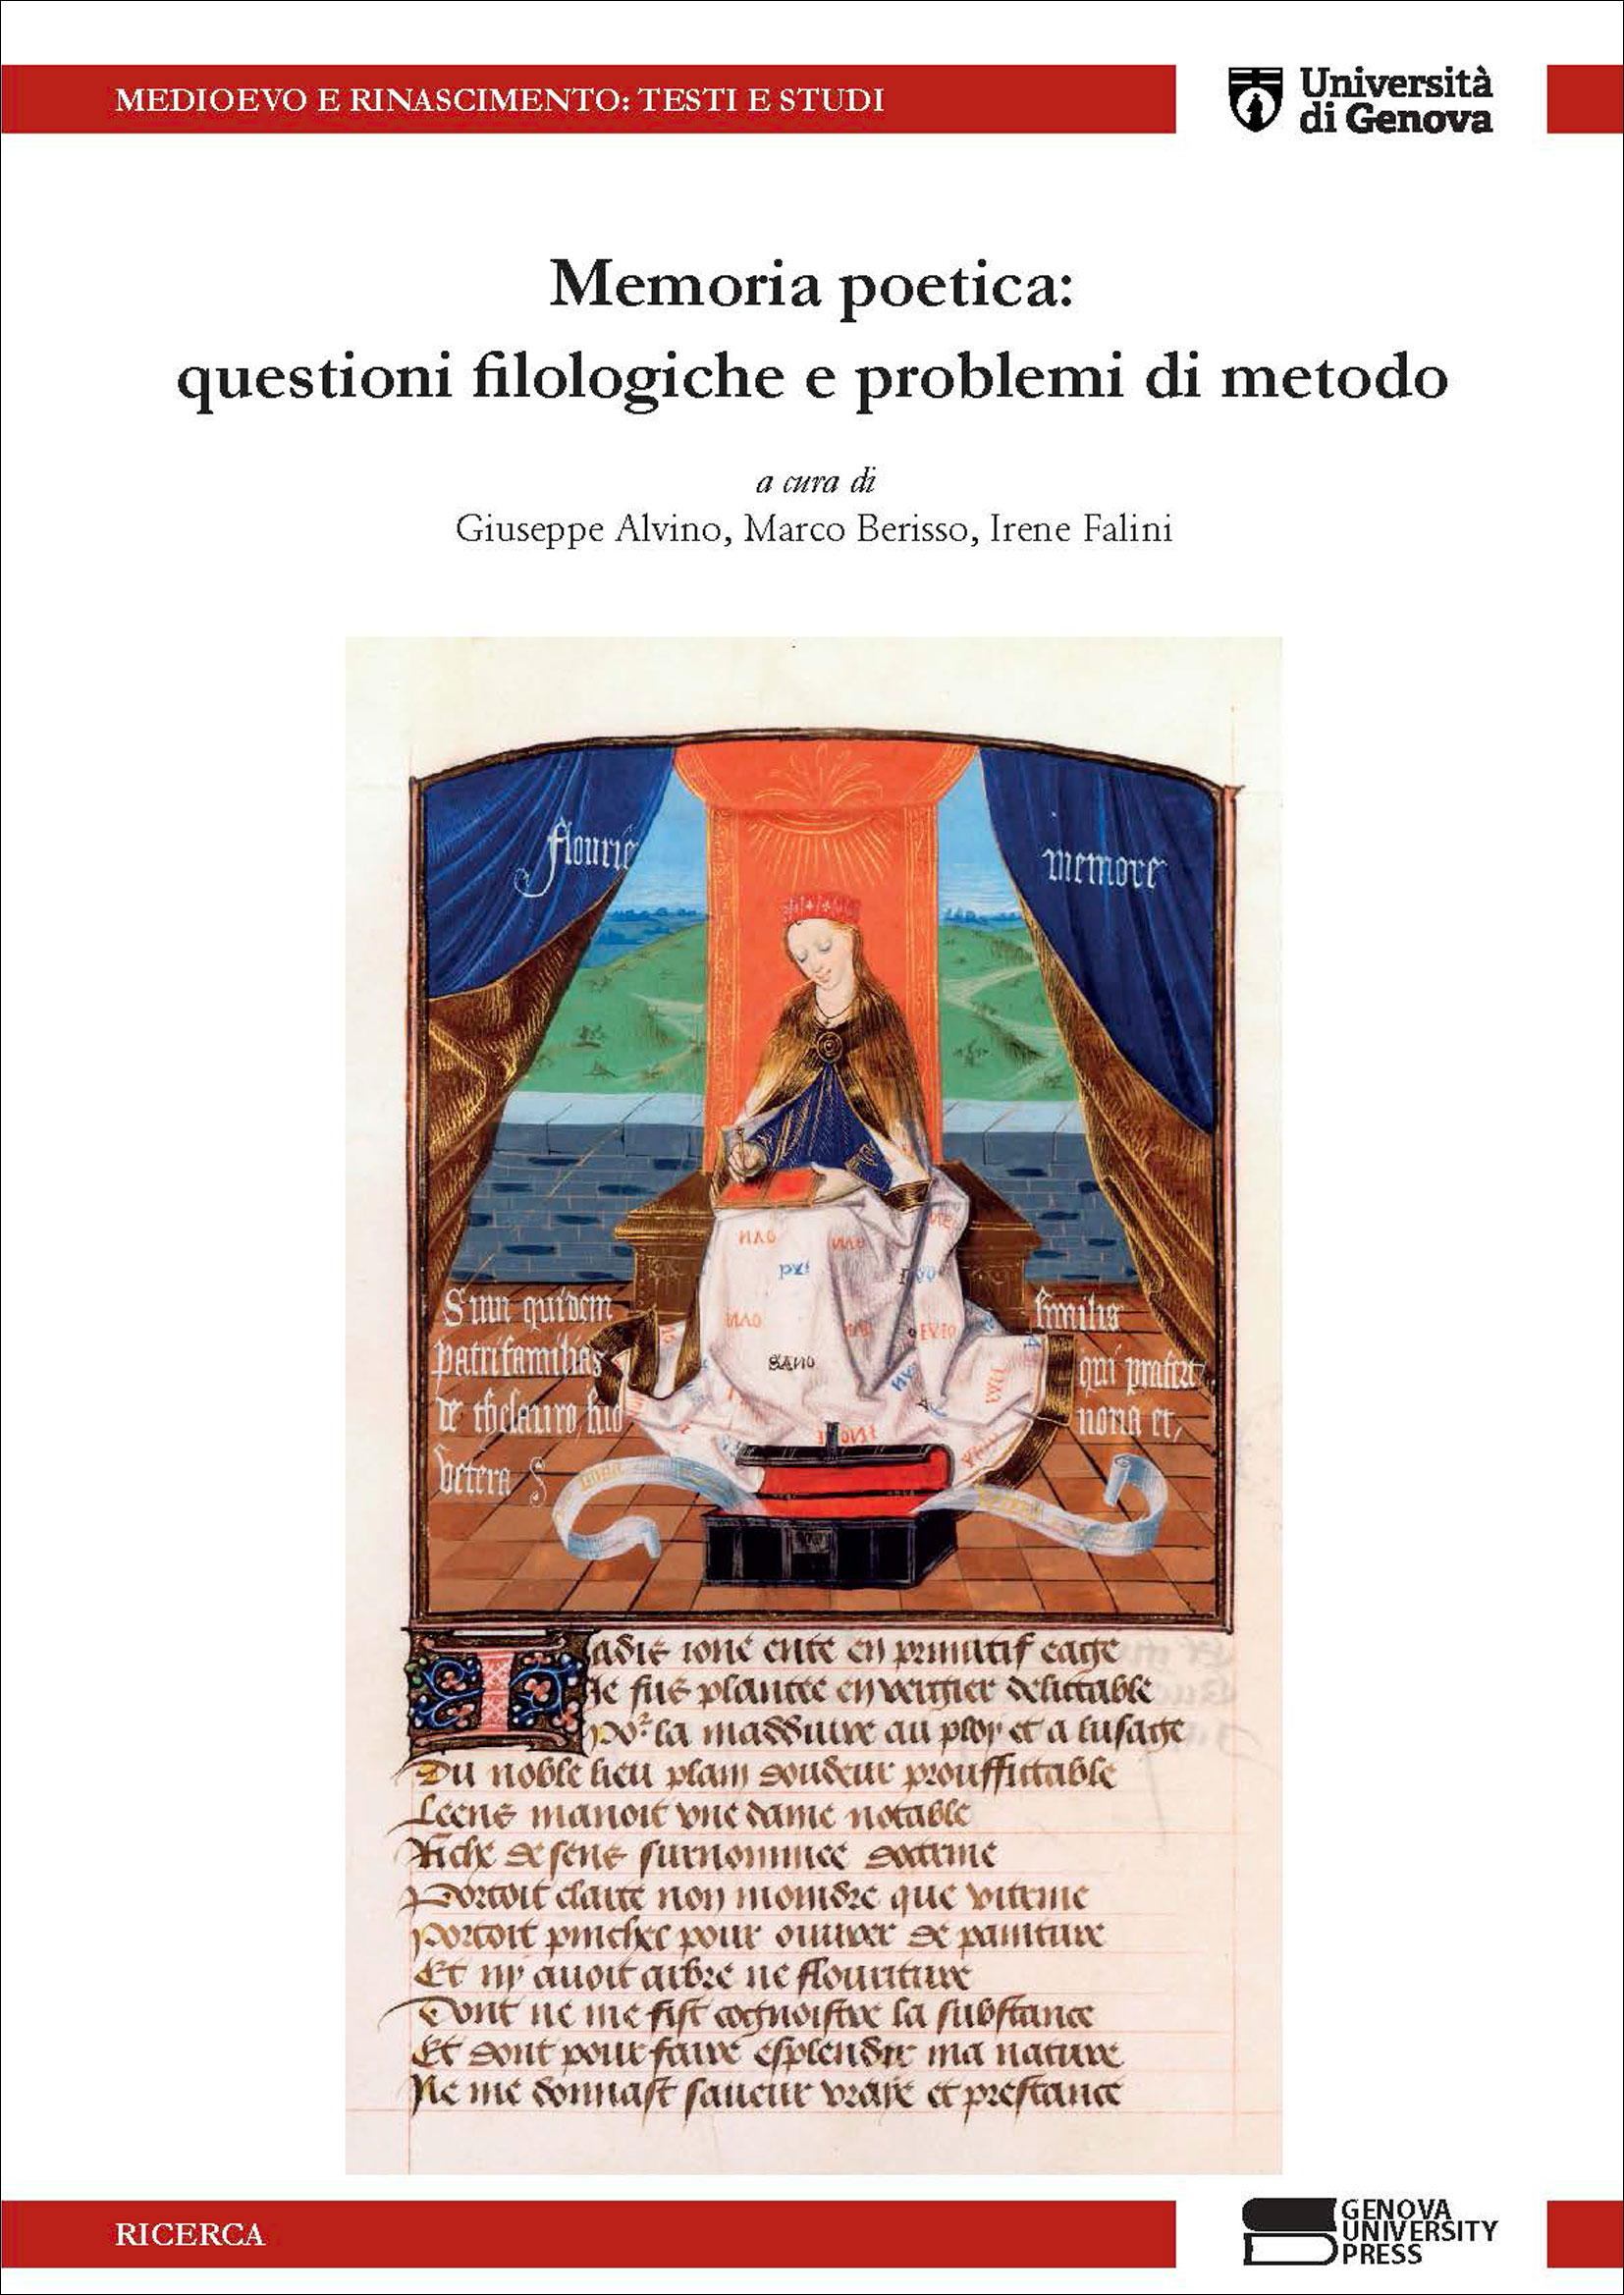 -Giuseppe Alvino, Marco Berisso e Irene Falini (ed.), Memoria poetica: questioni filologiche e problemi di metodo, Genova 2019 (Genova University Press), pp. 282. ISBN: 978-88-94943-63- 4. 